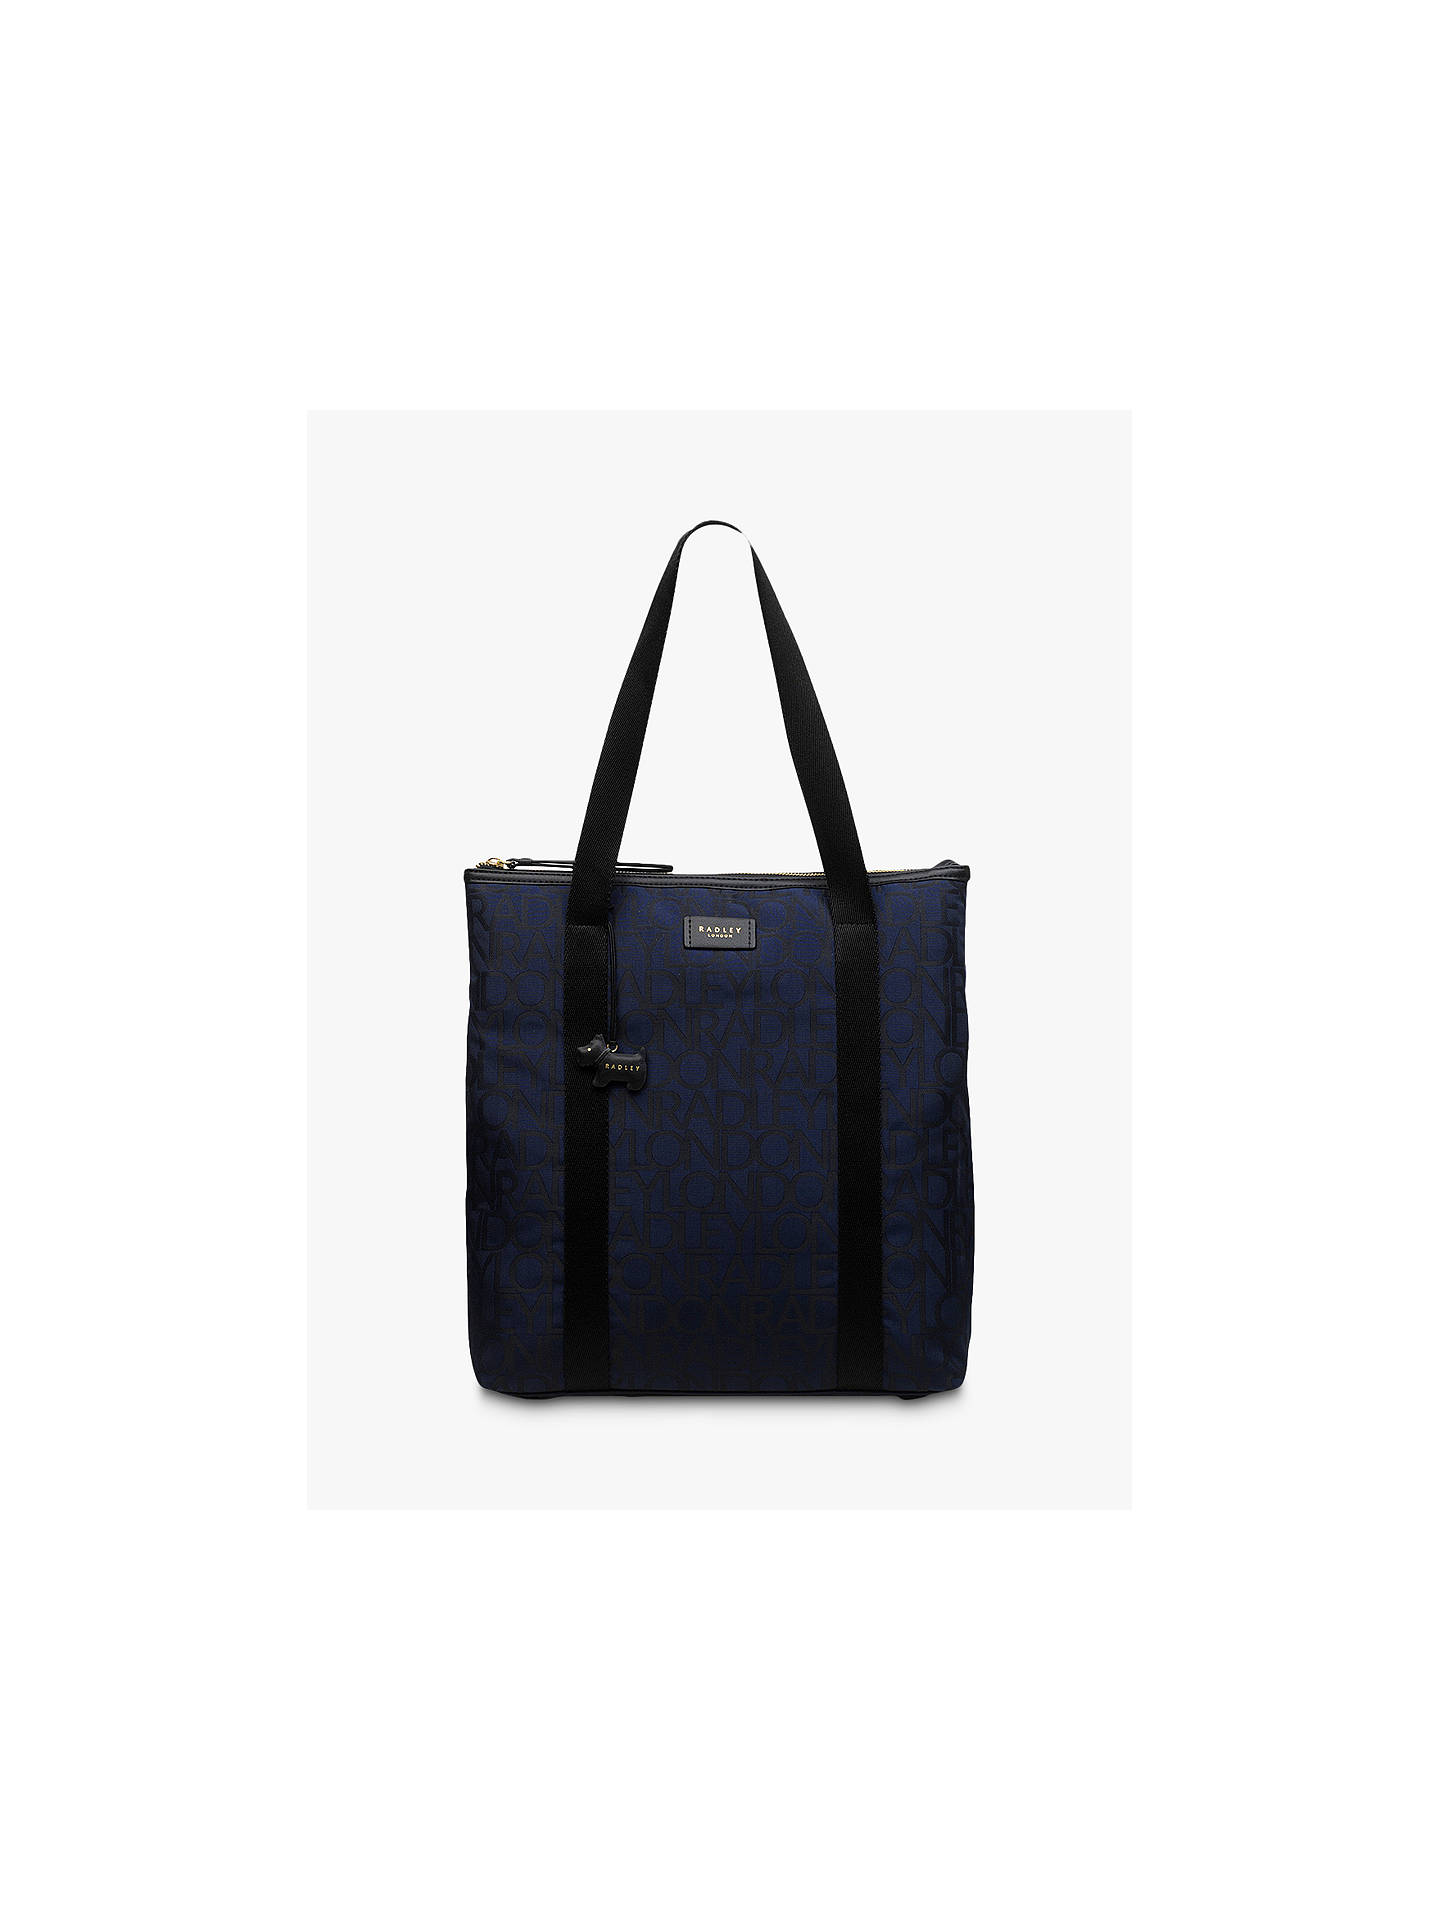 Radley Signature Jacquard Tote Bag, Dark Blue at John Lewis & Partners